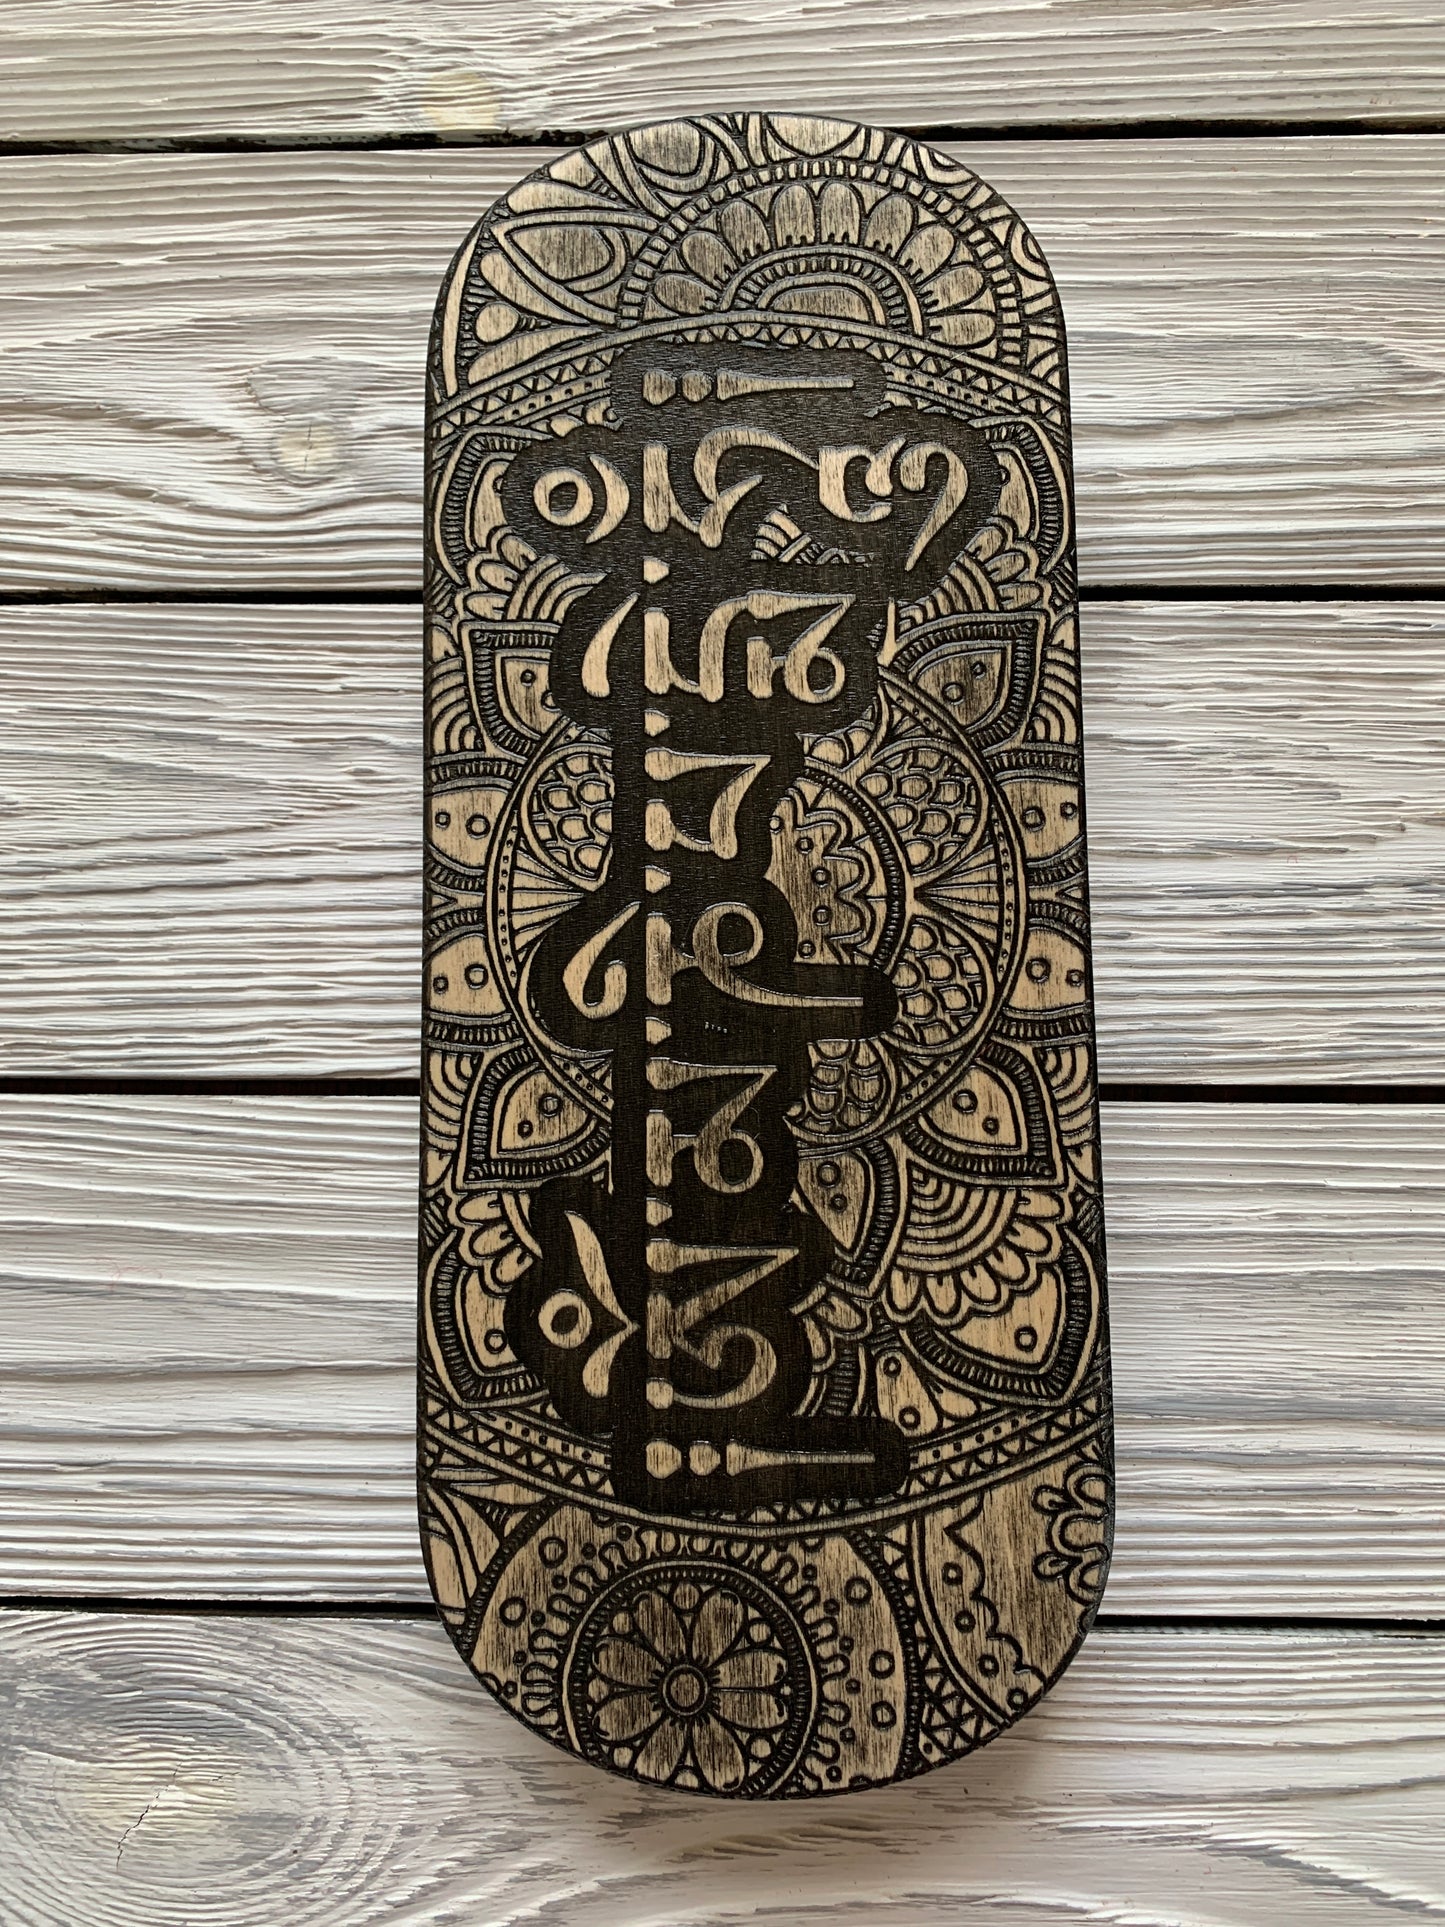 Sadhu board - Sanskrit, Yoga board, Nails board, 10 mm